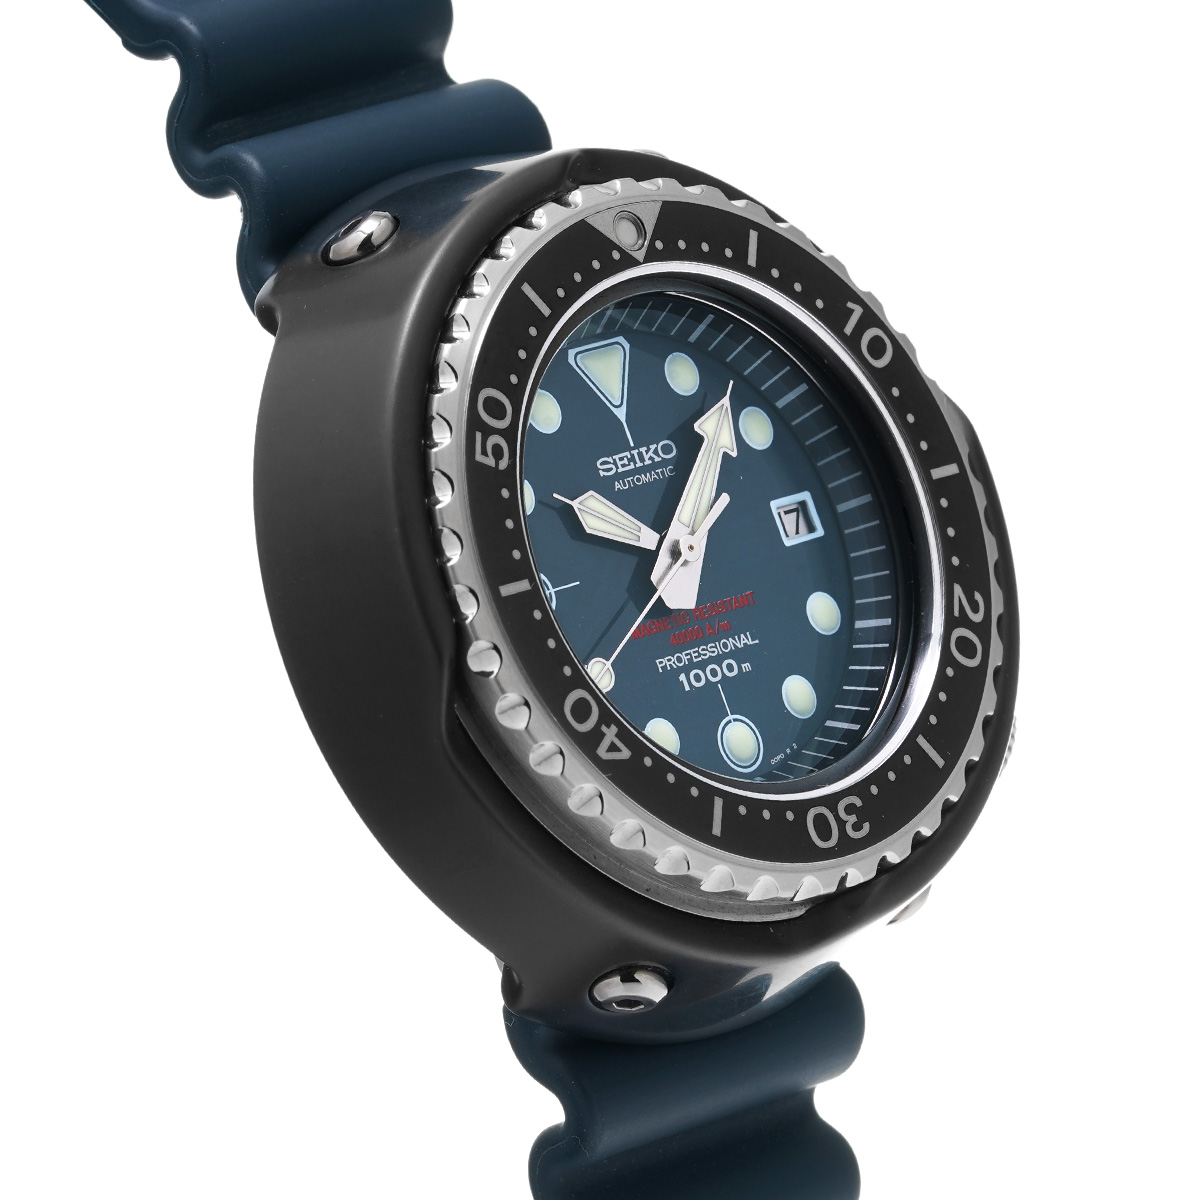 セイコー SEIKO SBDX035 ブルー メンズ 腕時計